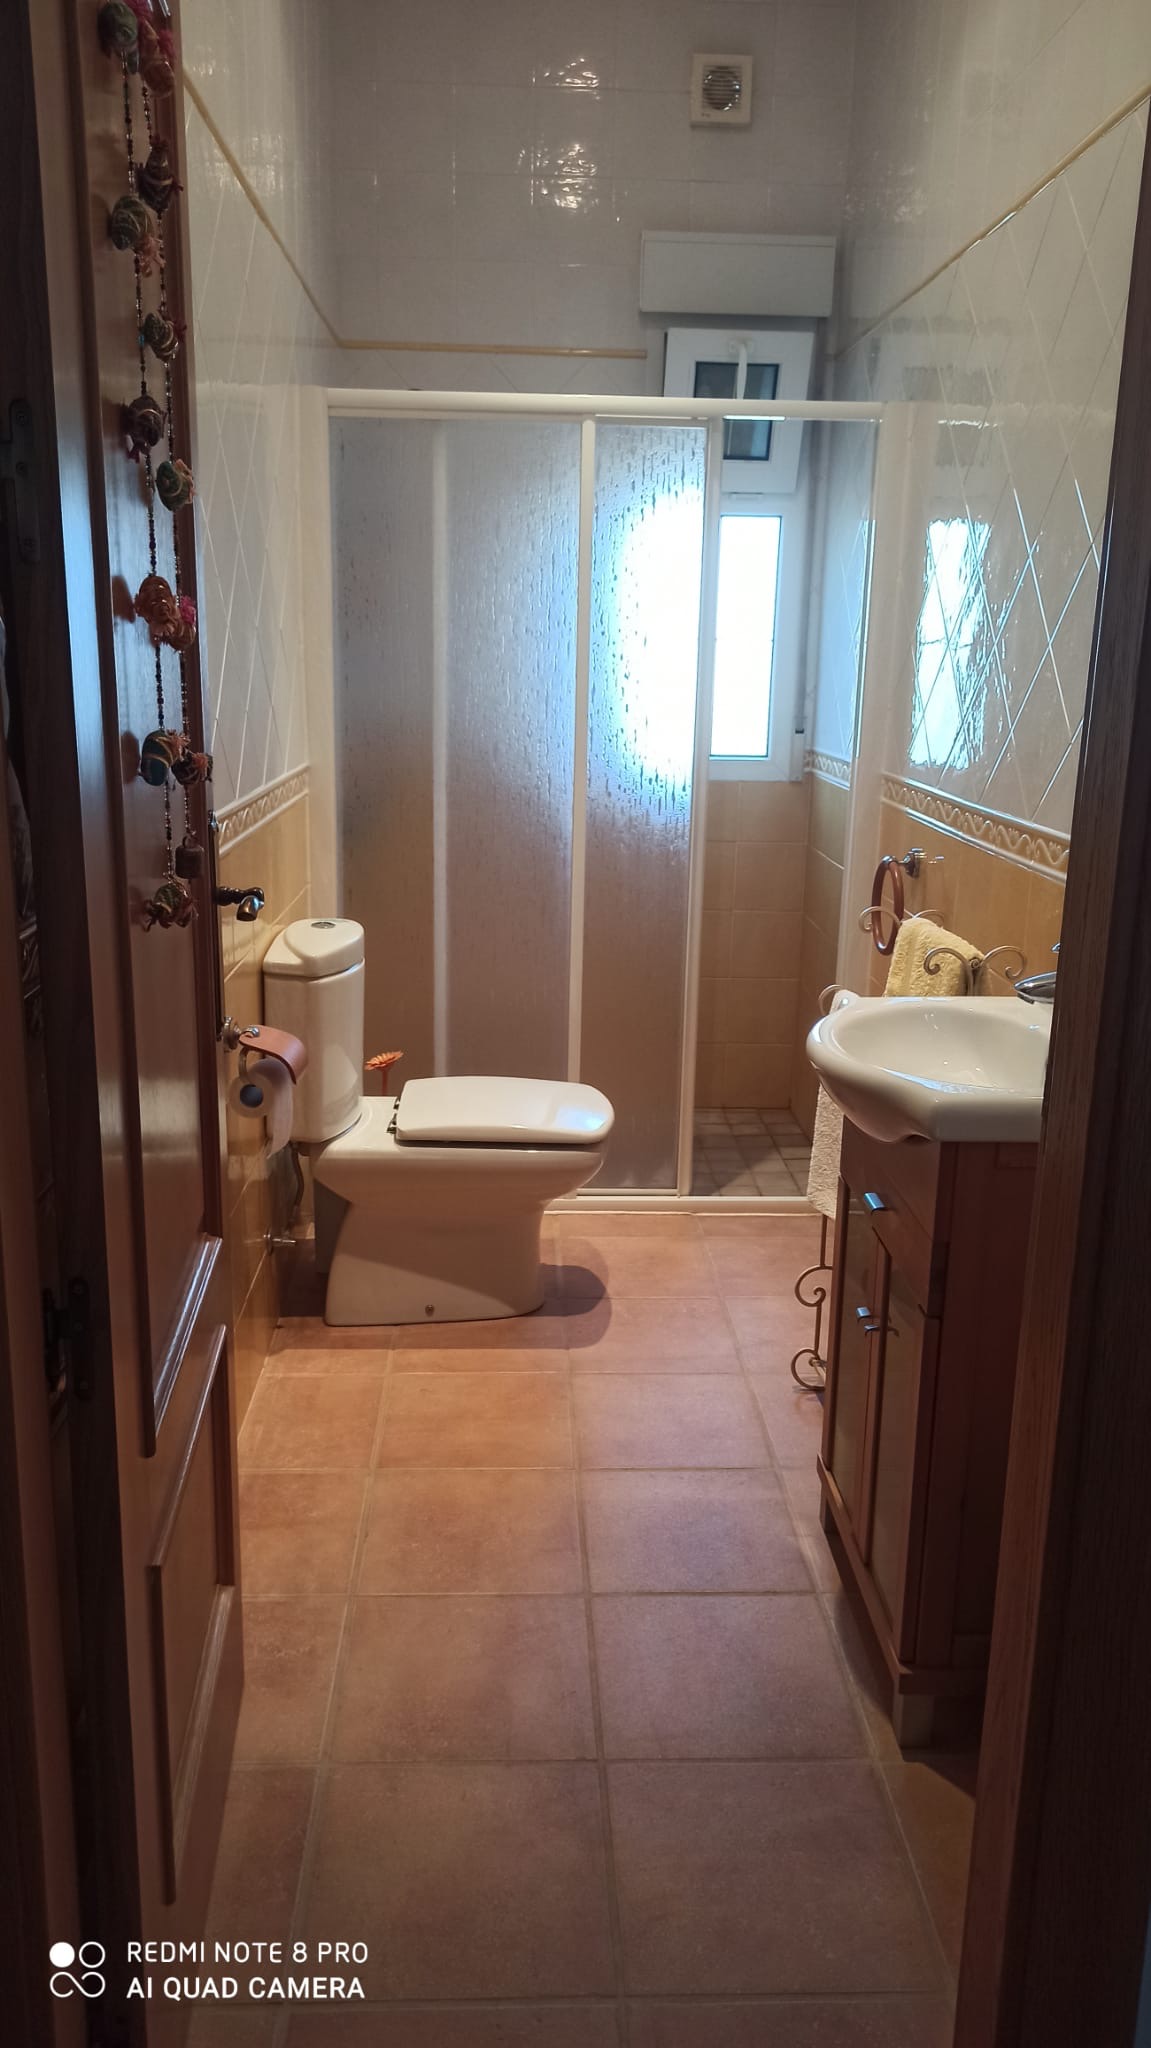 4 Bedroom, 3 Bathroom Villa in Murcia